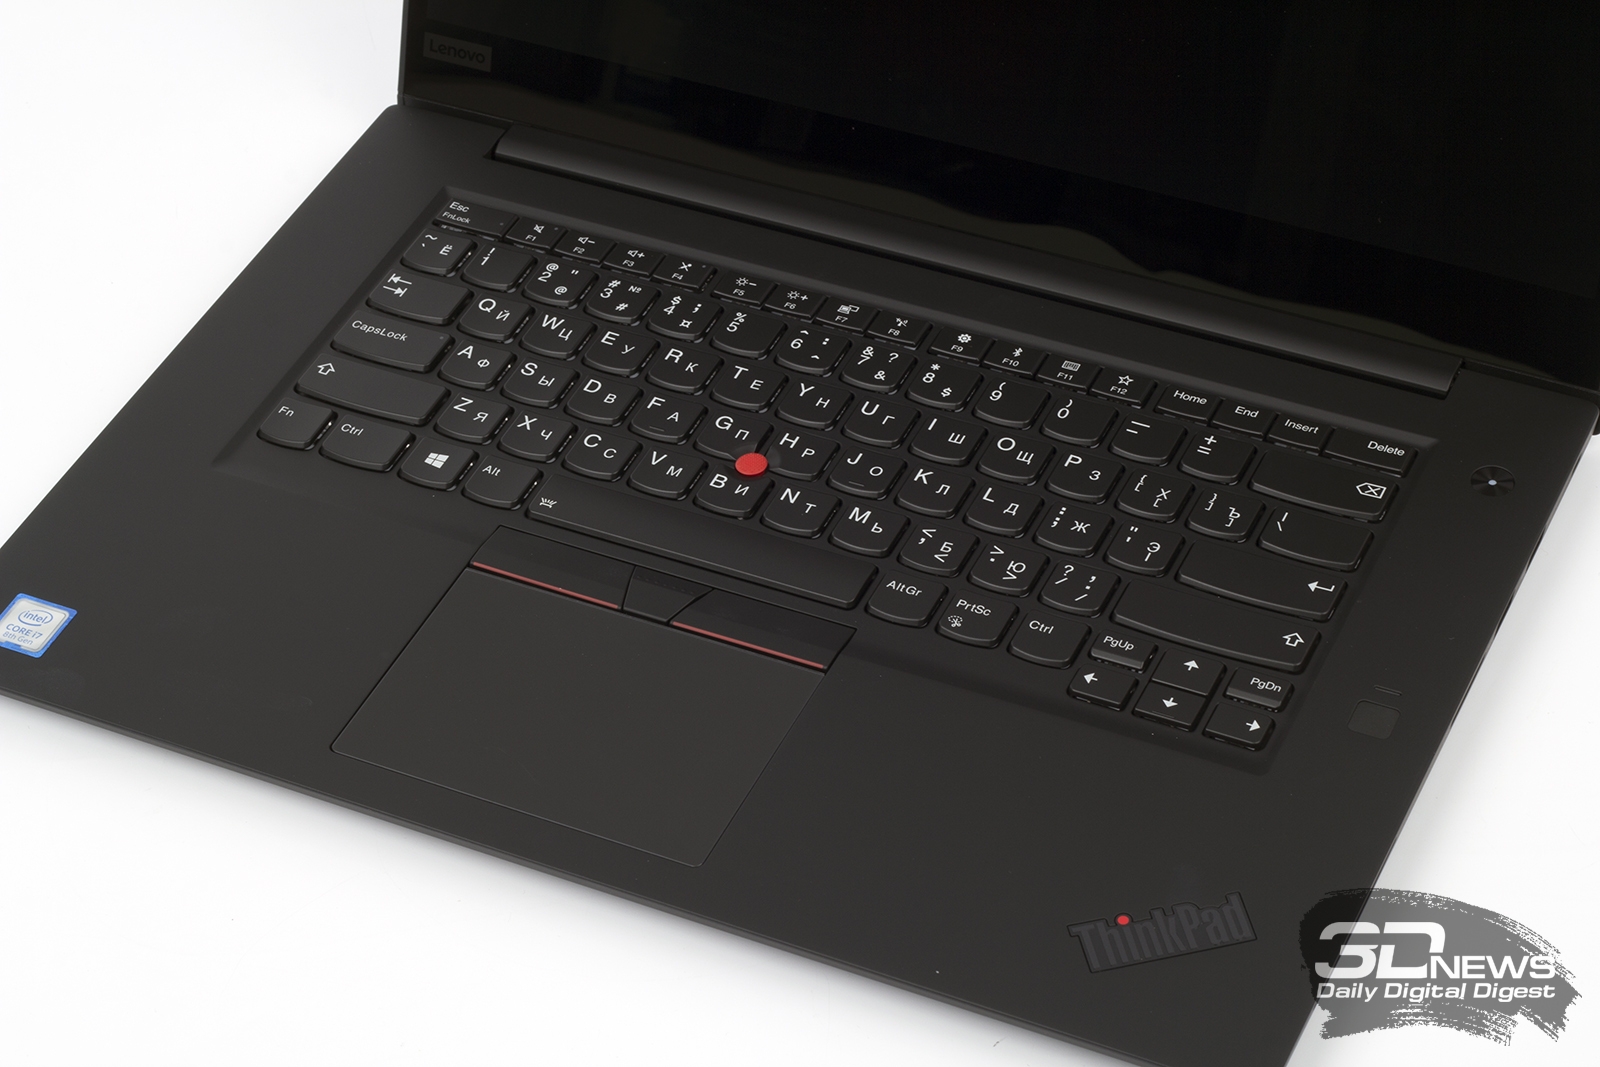 Купить Ноутбук Lenovo Thinkpad X1